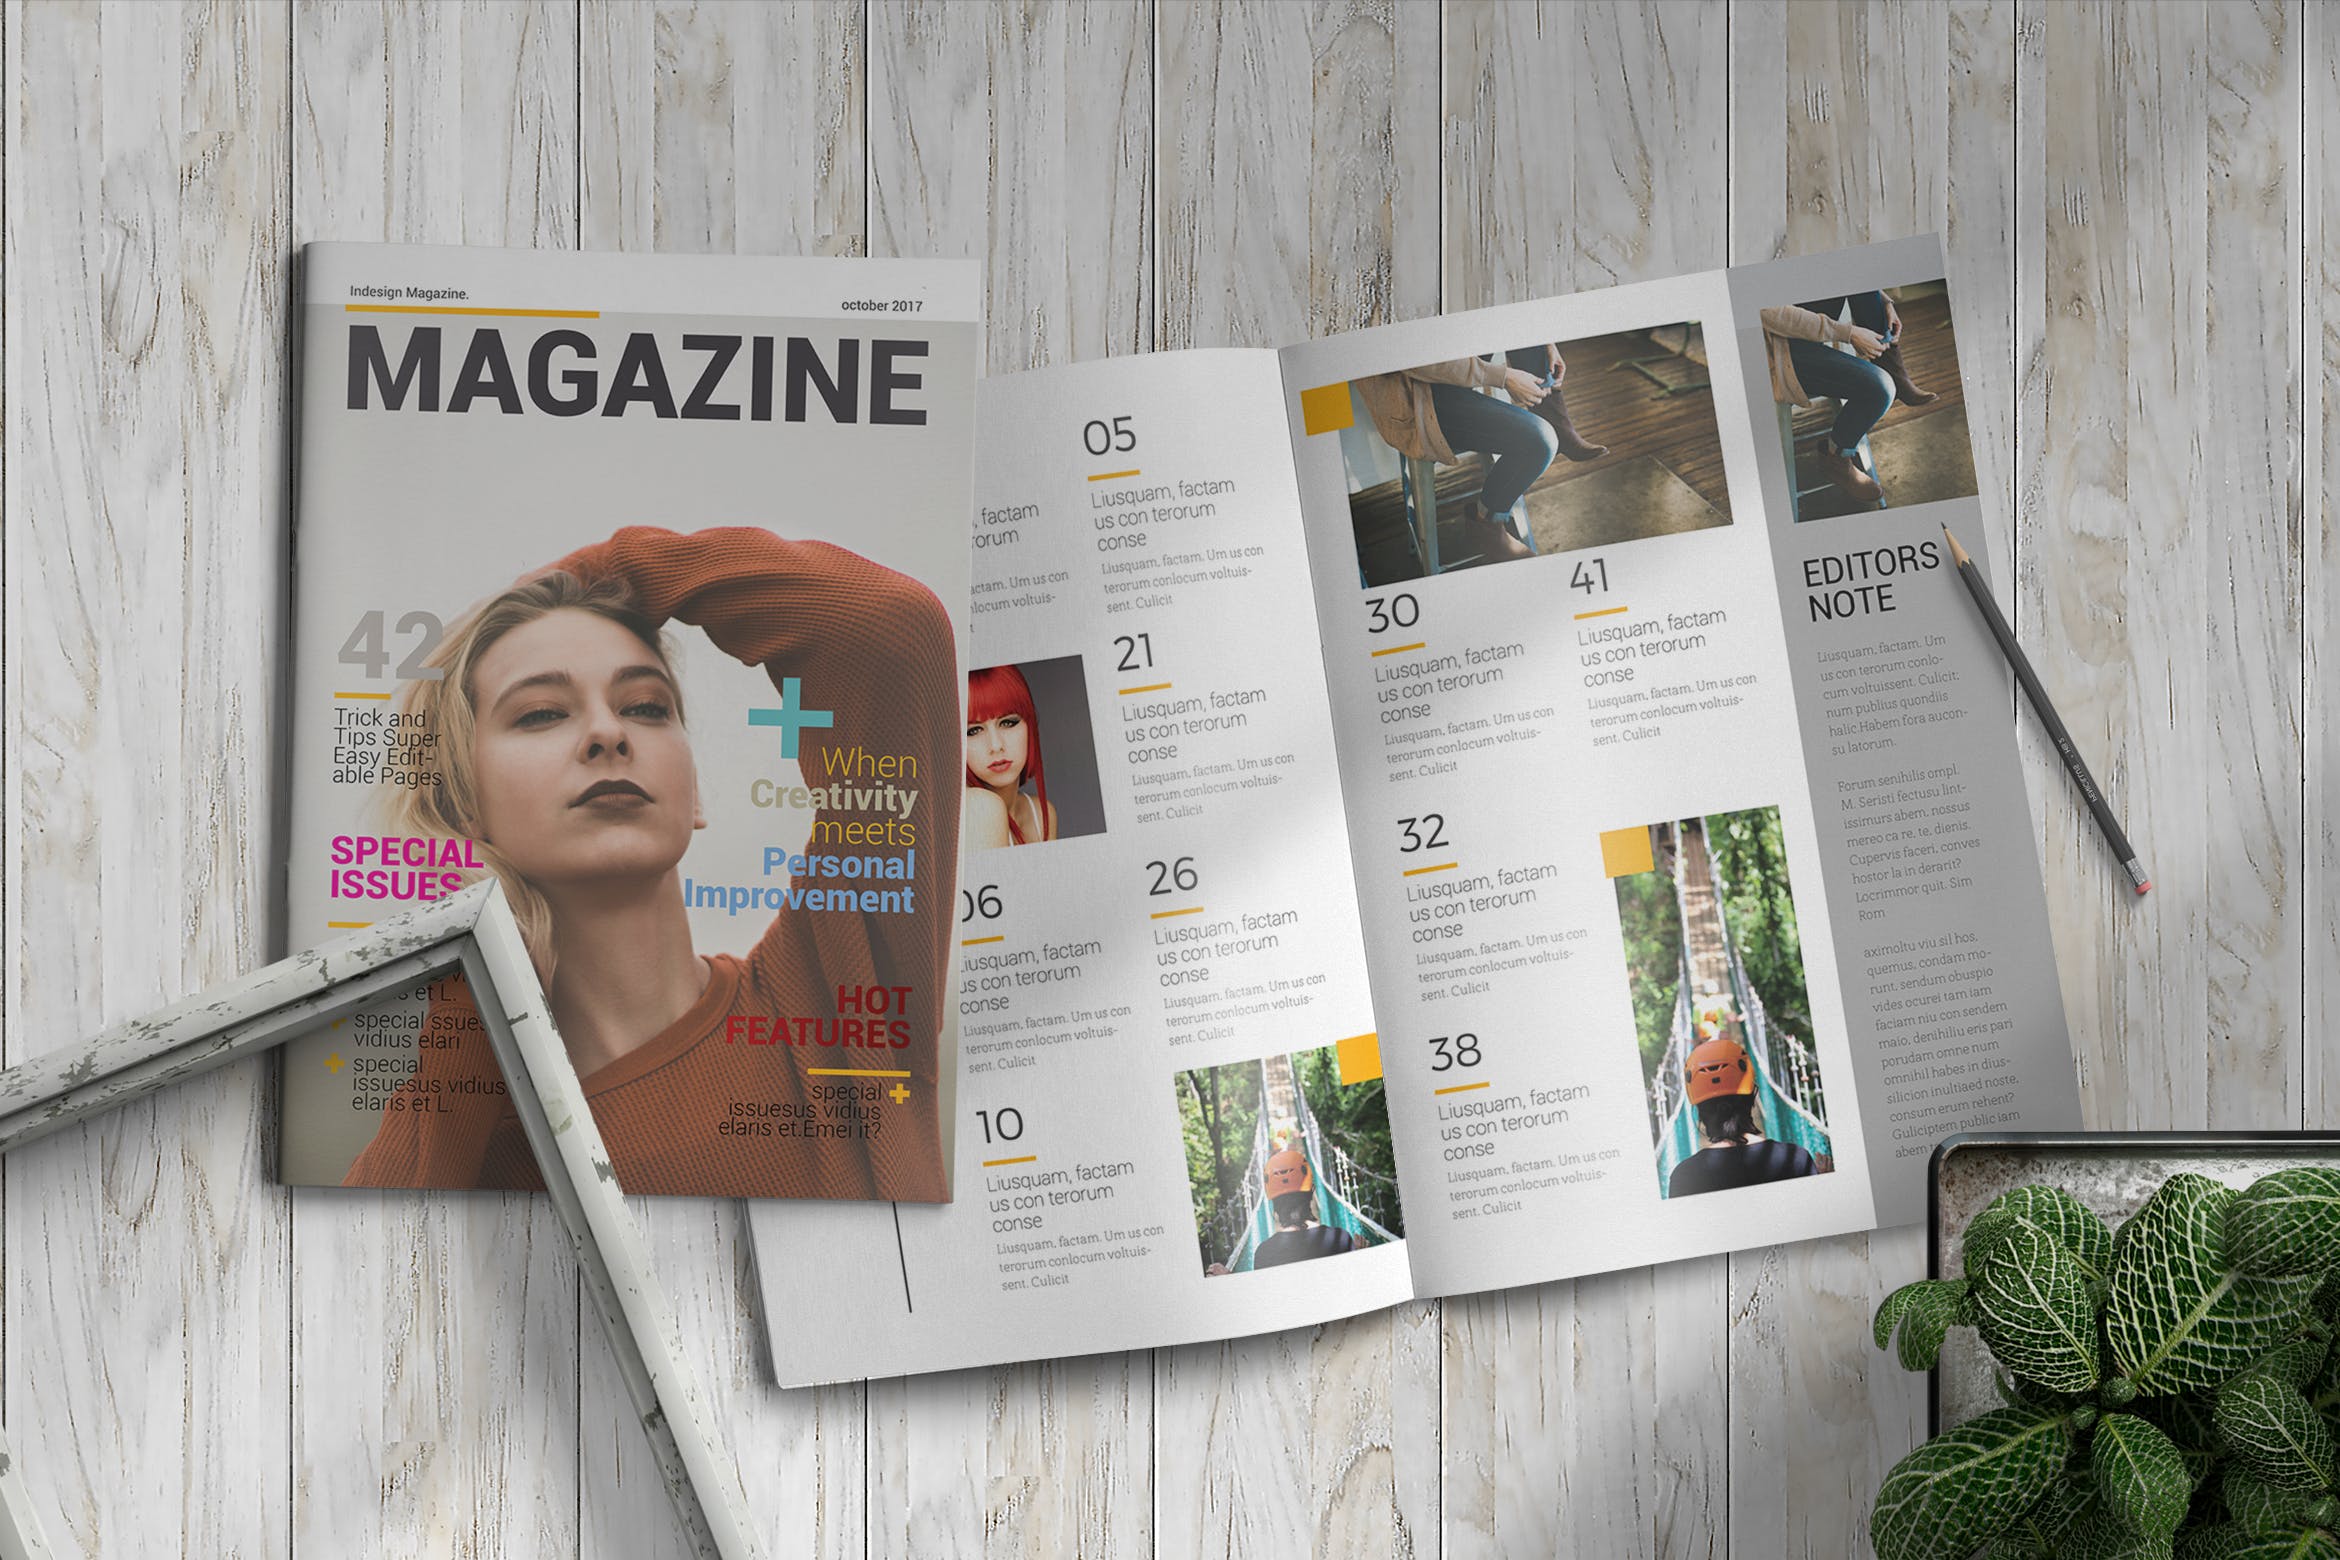 女性时尚主题素材中国精选杂志版式设计InDesign模板 InDesign Magazine Template插图